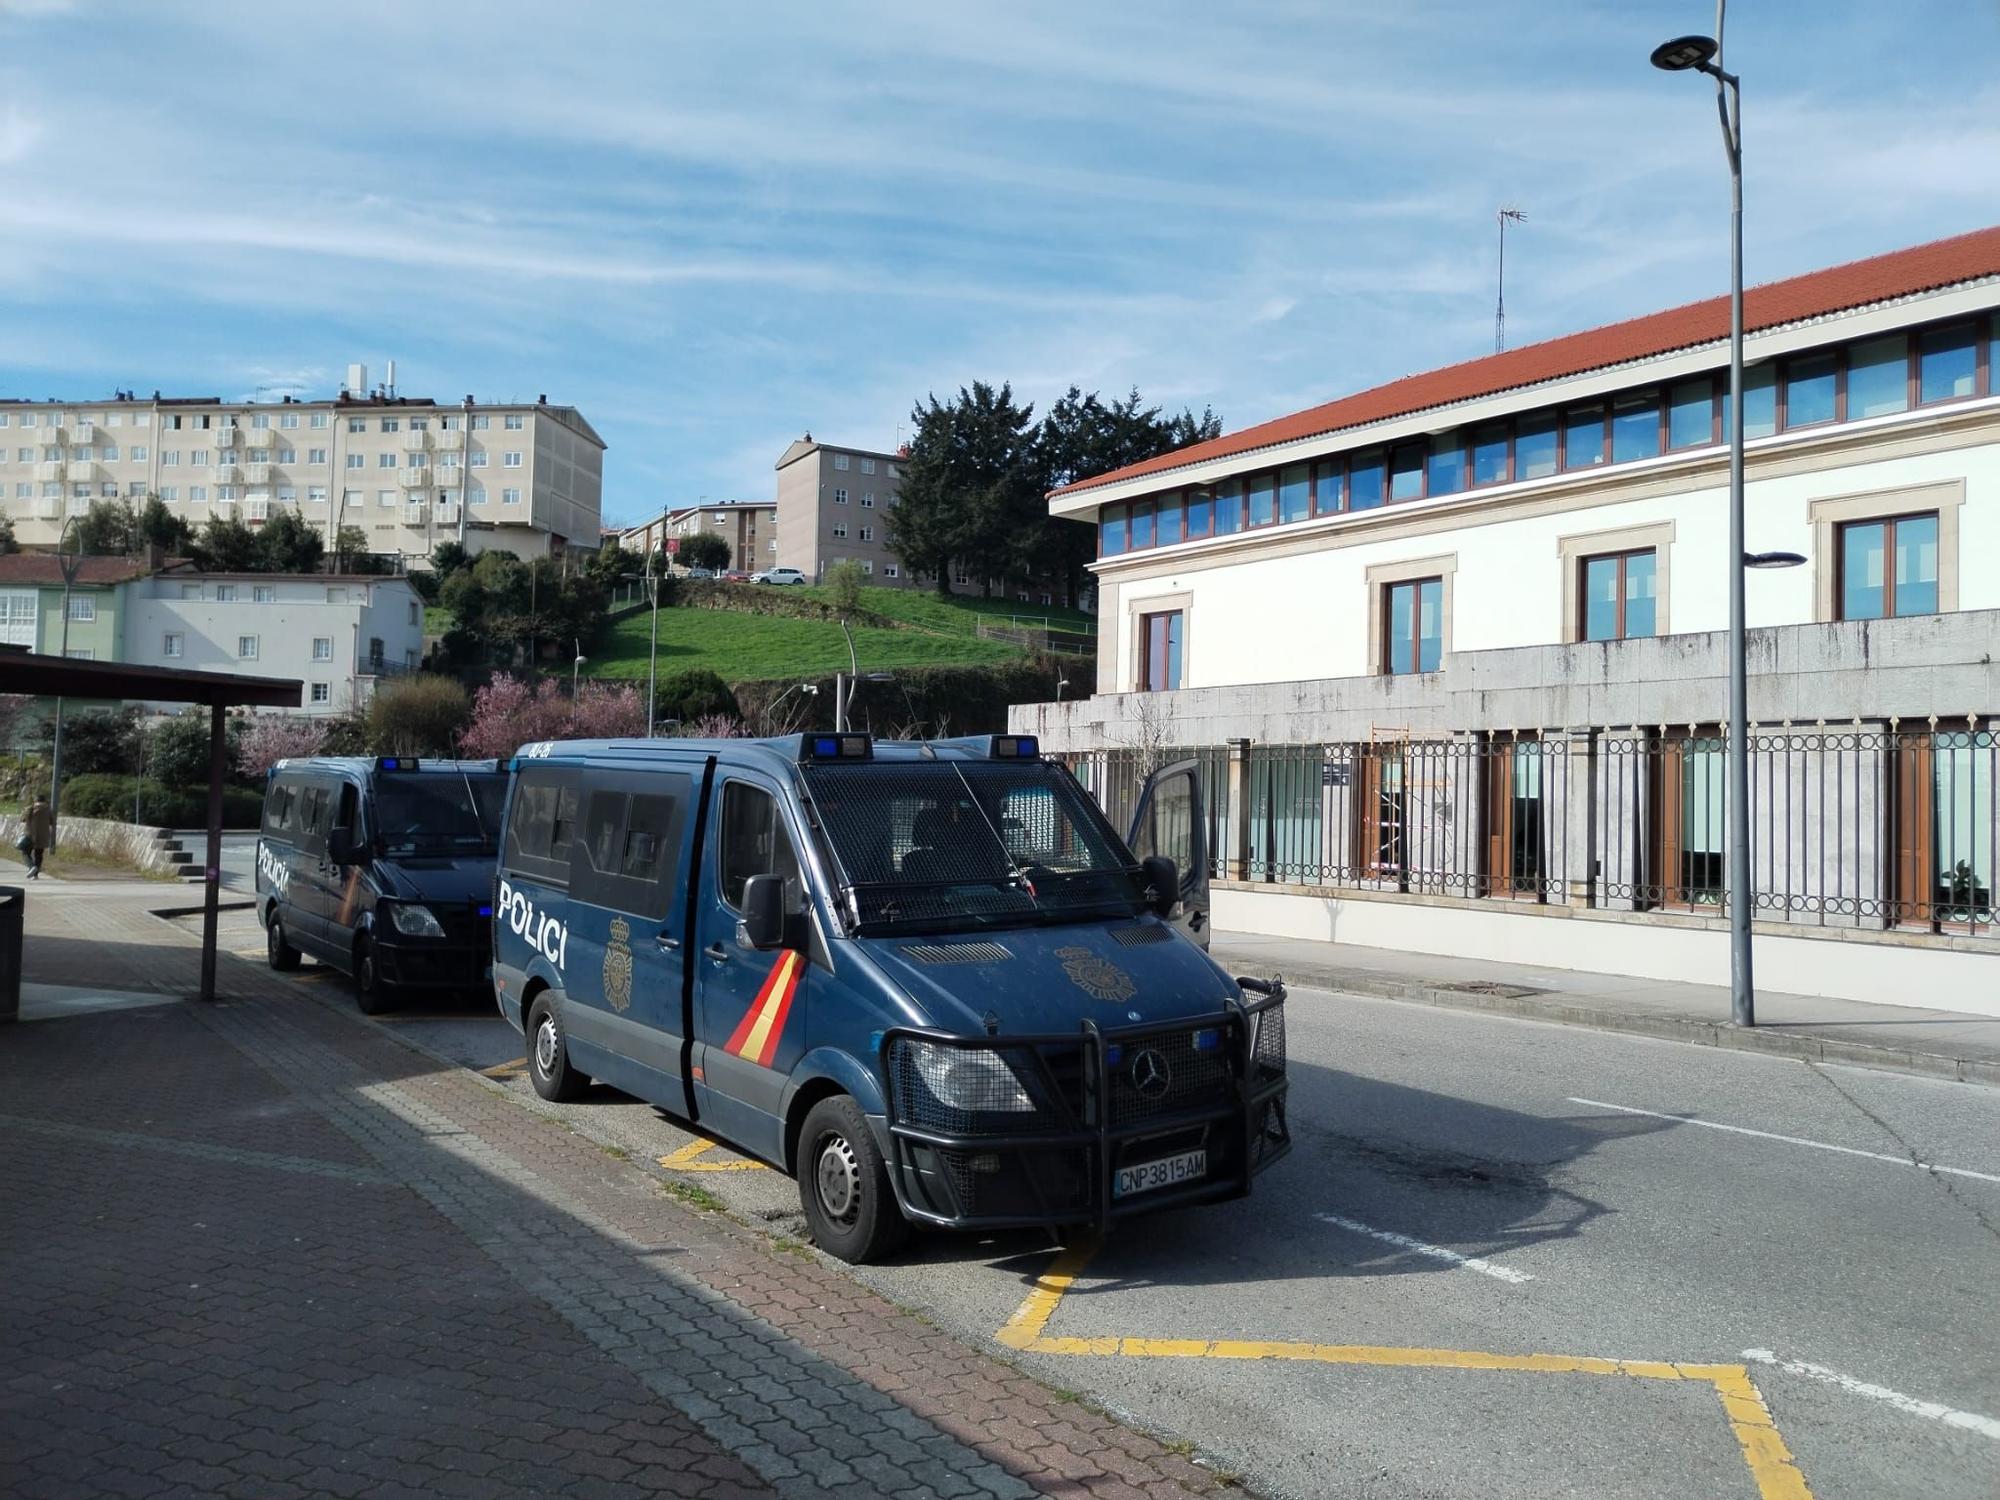 La tractorada gallega rodea la sede de la Xunta